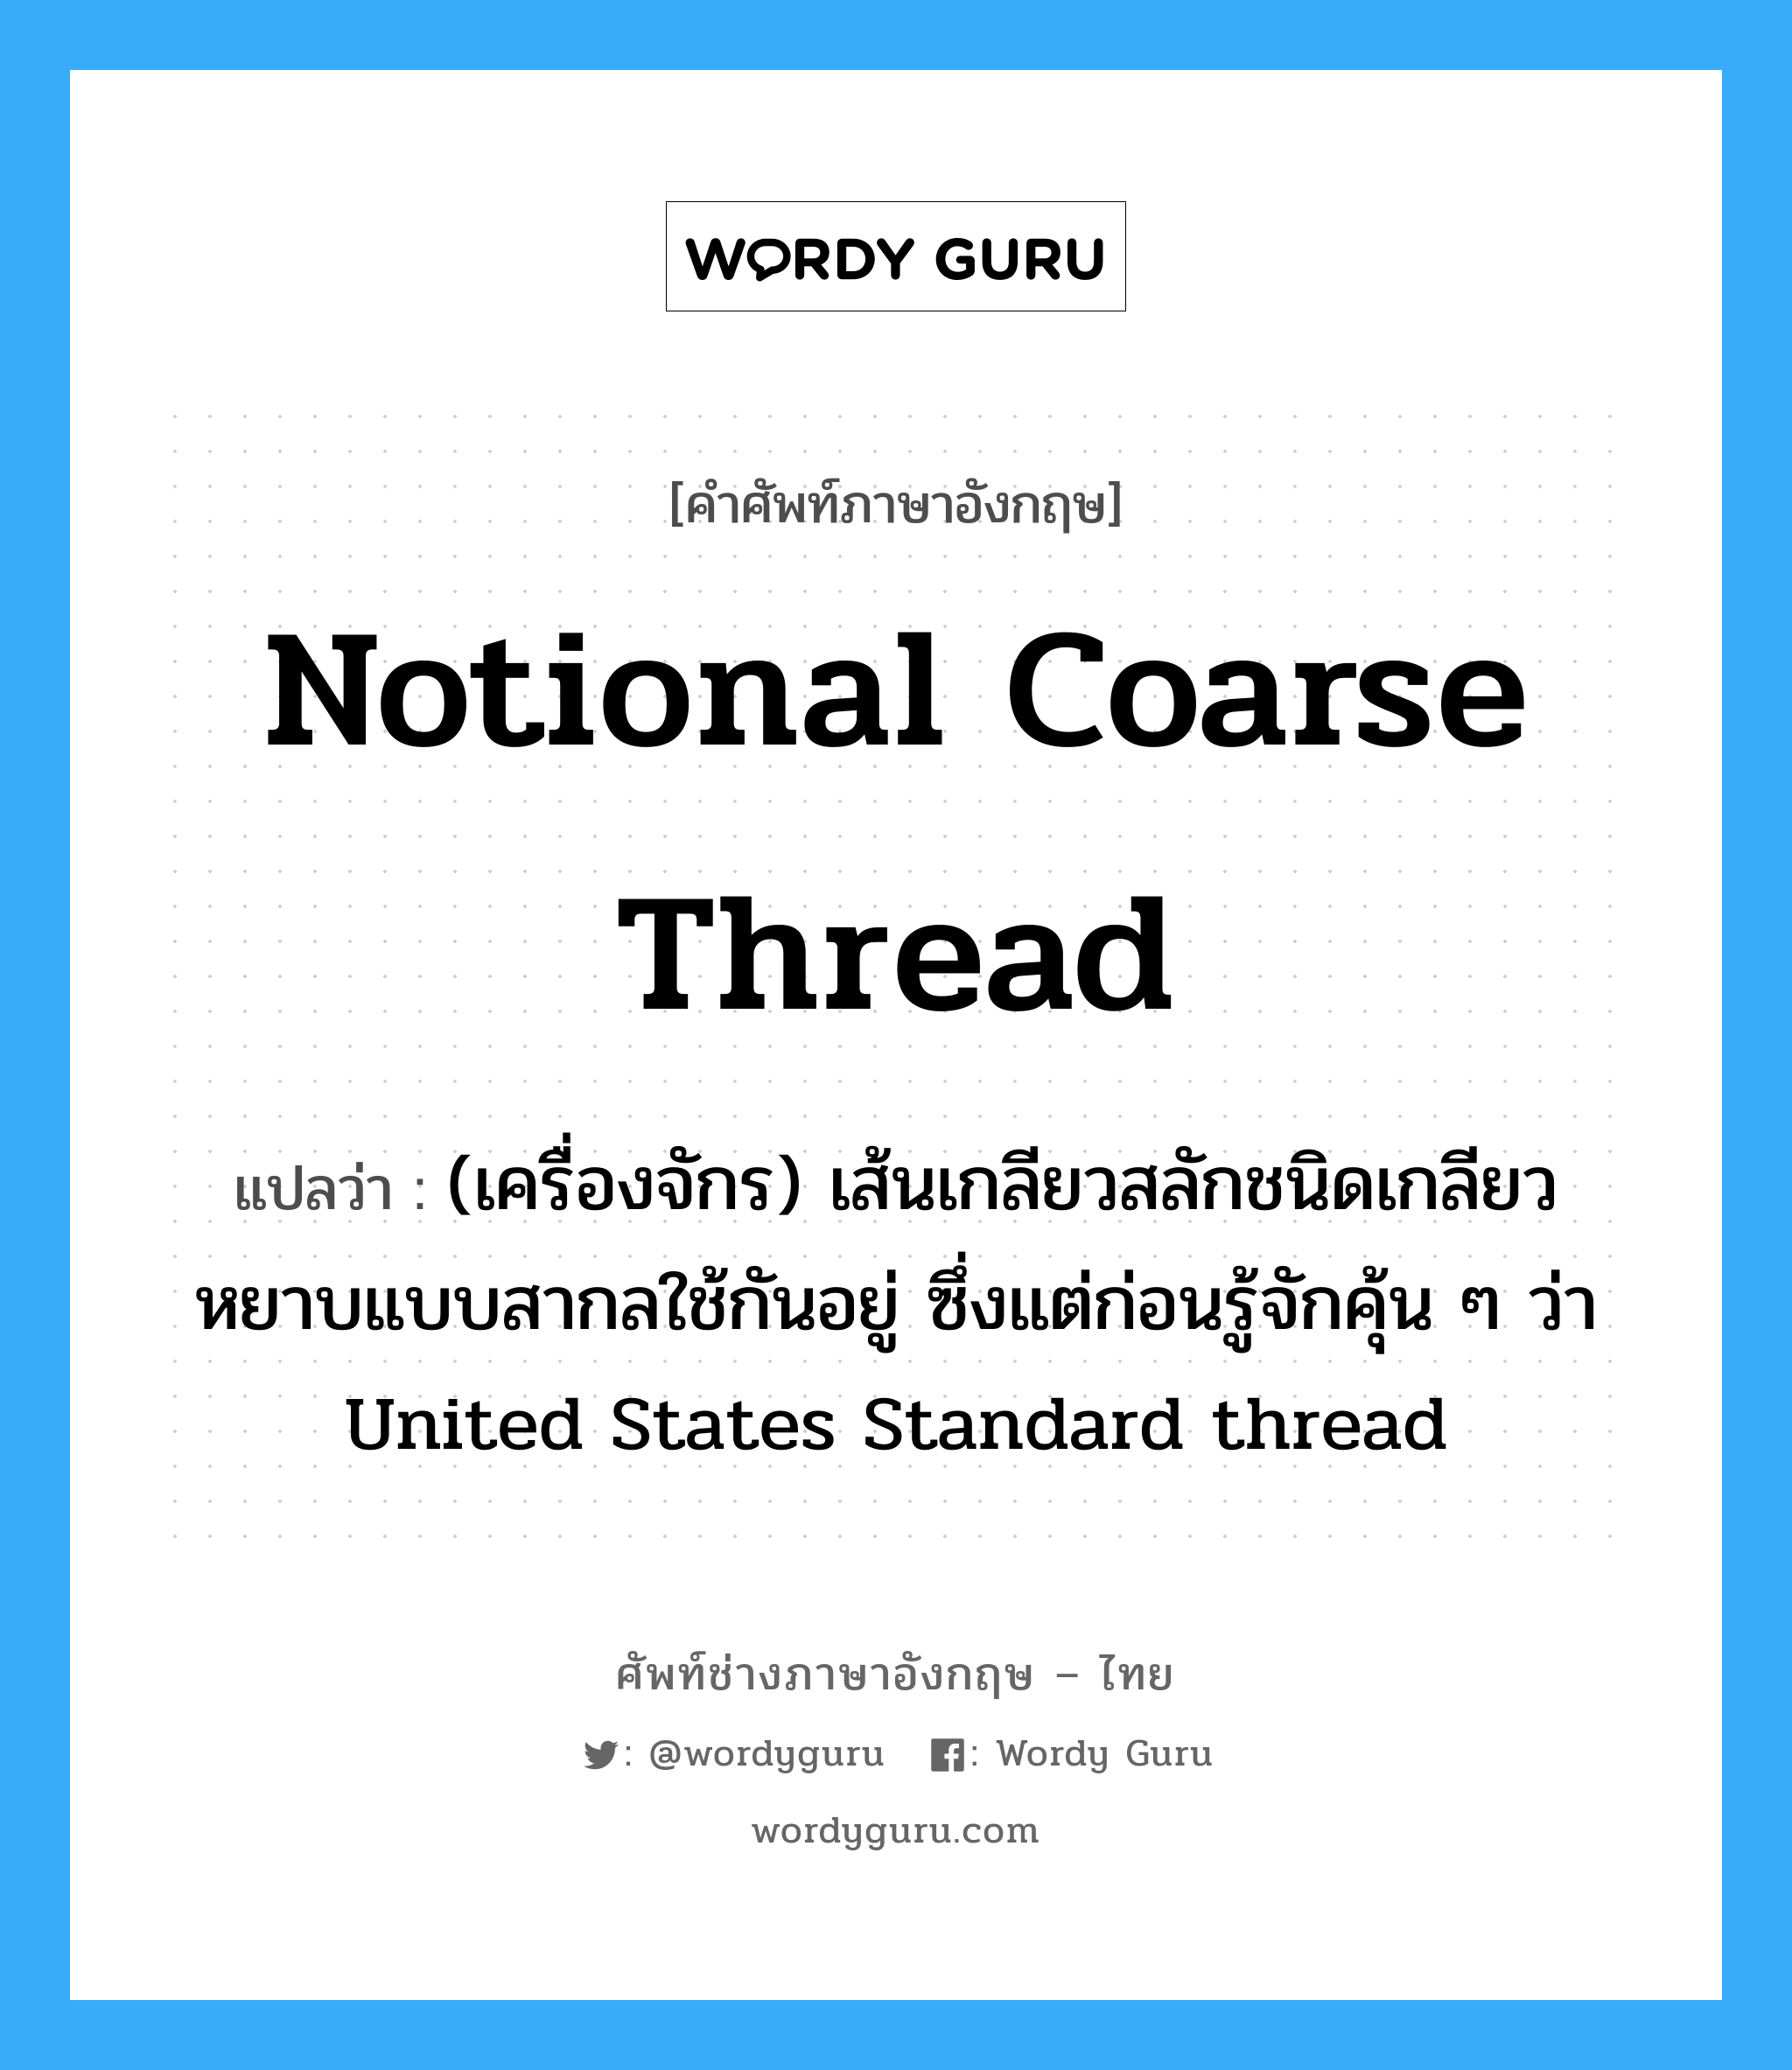 Notional coarse thread แปลว่า?, คำศัพท์ช่างภาษาอังกฤษ - ไทย Notional coarse thread คำศัพท์ภาษาอังกฤษ Notional coarse thread แปลว่า (เครื่องจักร) เส้นเกลียวสลักชนิดเกลียวหยาบแบบสากลใช้กันอยู่ ซึ่งแต่ก่อนรู้จักคุ้น ๆ ว่า United States Standard thread